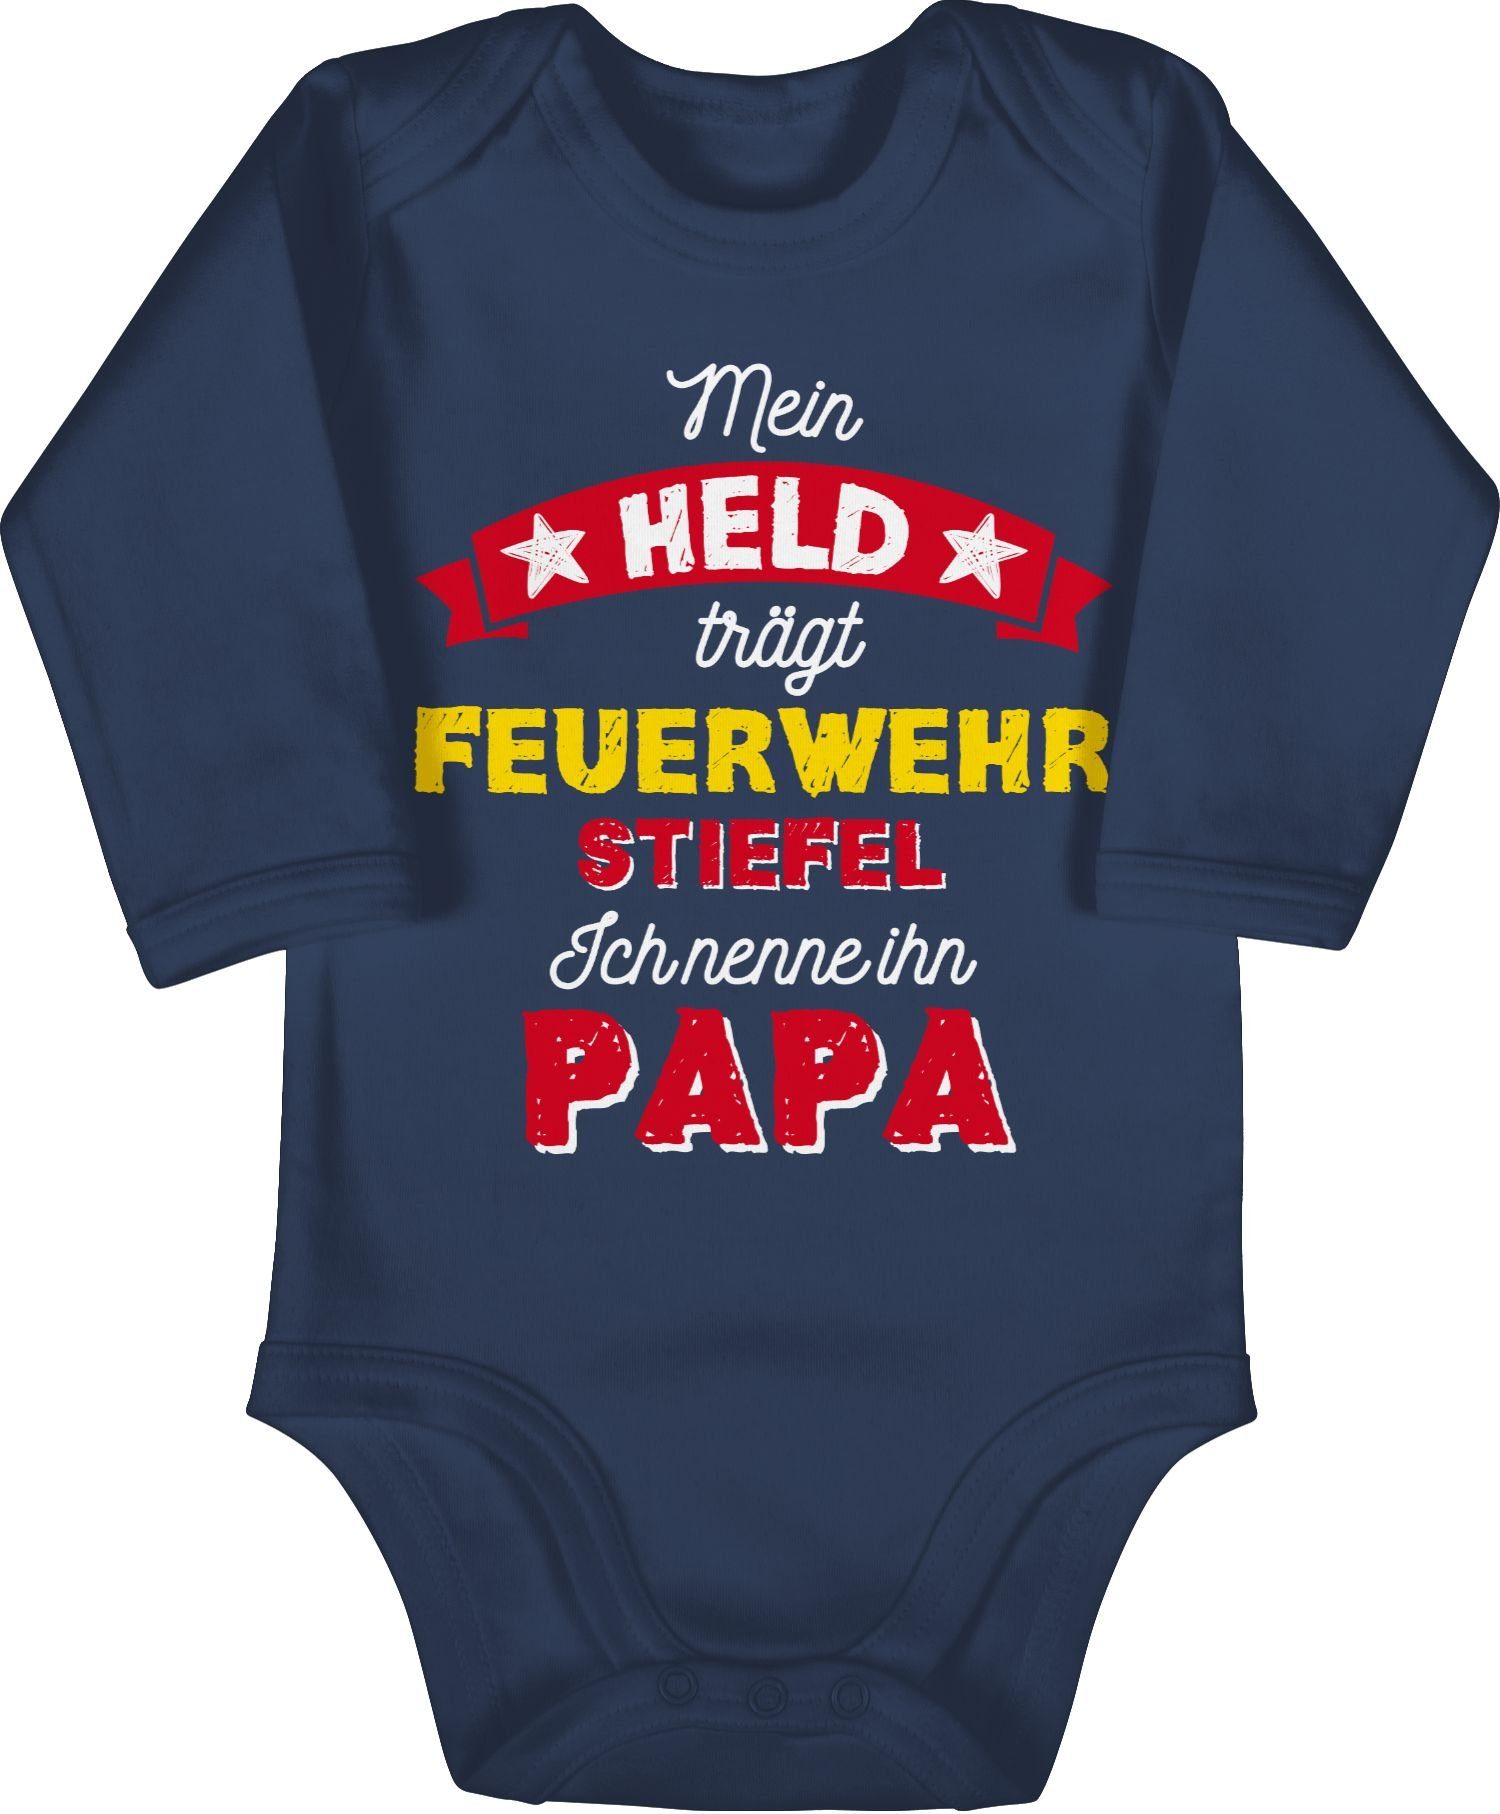 Geschenk Blau Shirtracer Mein Baby Held trägt Vatertag Navy Feuerwehrstiefel Shirtbody 1